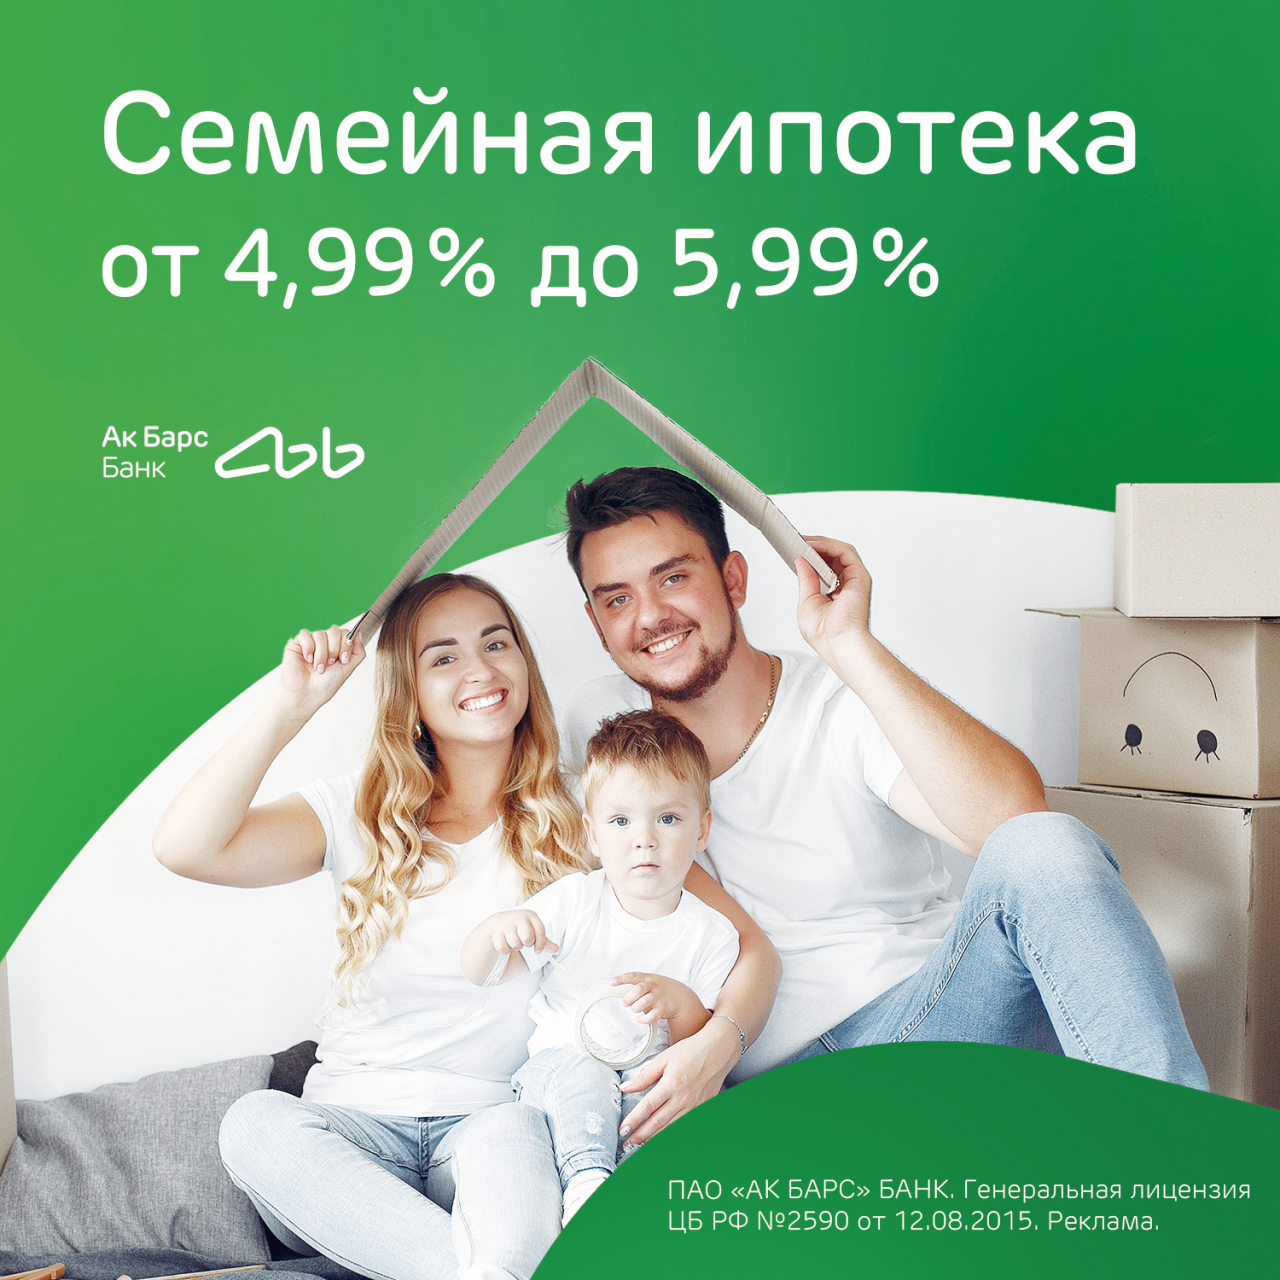 Ак Барс Банк возобновил прием заявок по программе «Семейная ипотека»